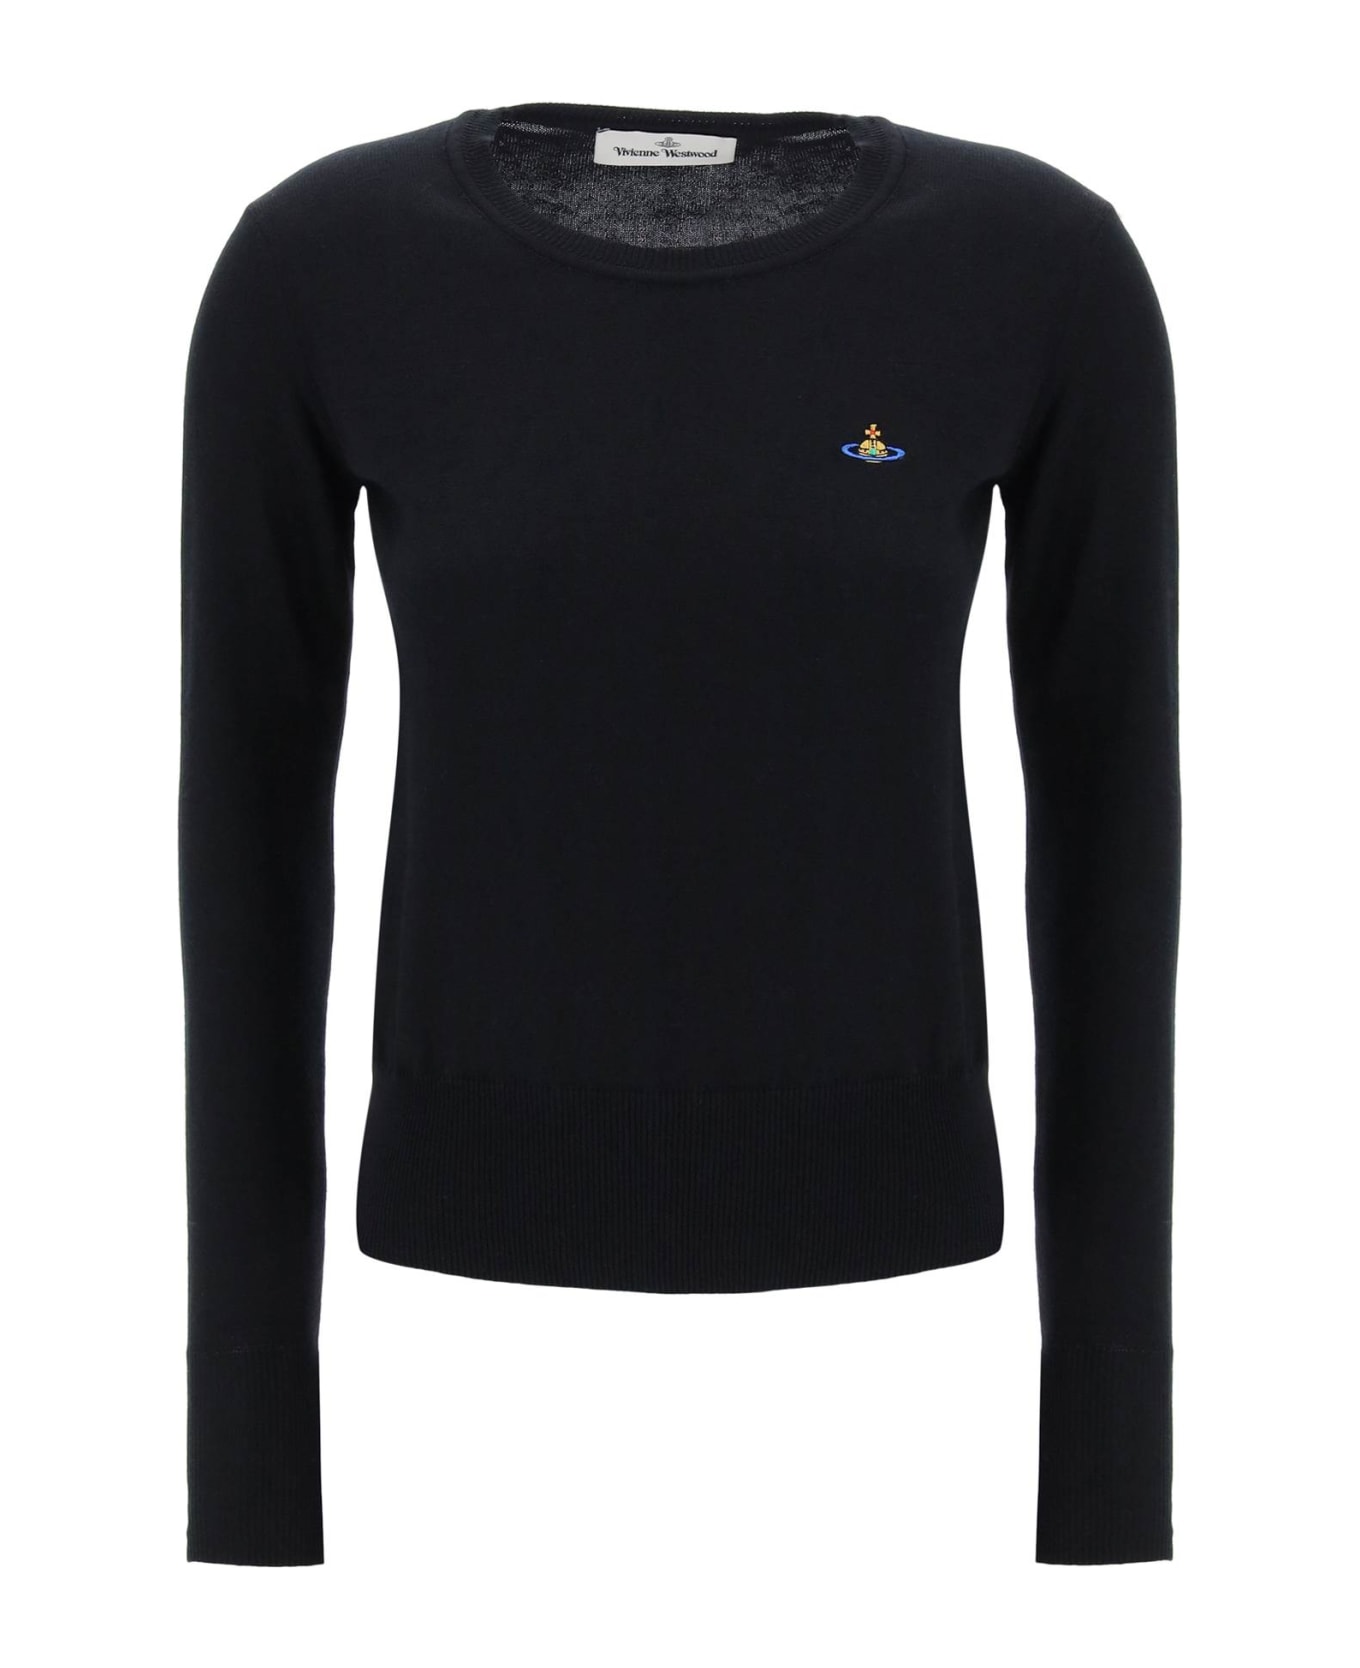 Vivienne Westwood Embroidered Logo Pullover - BLACK (Black)